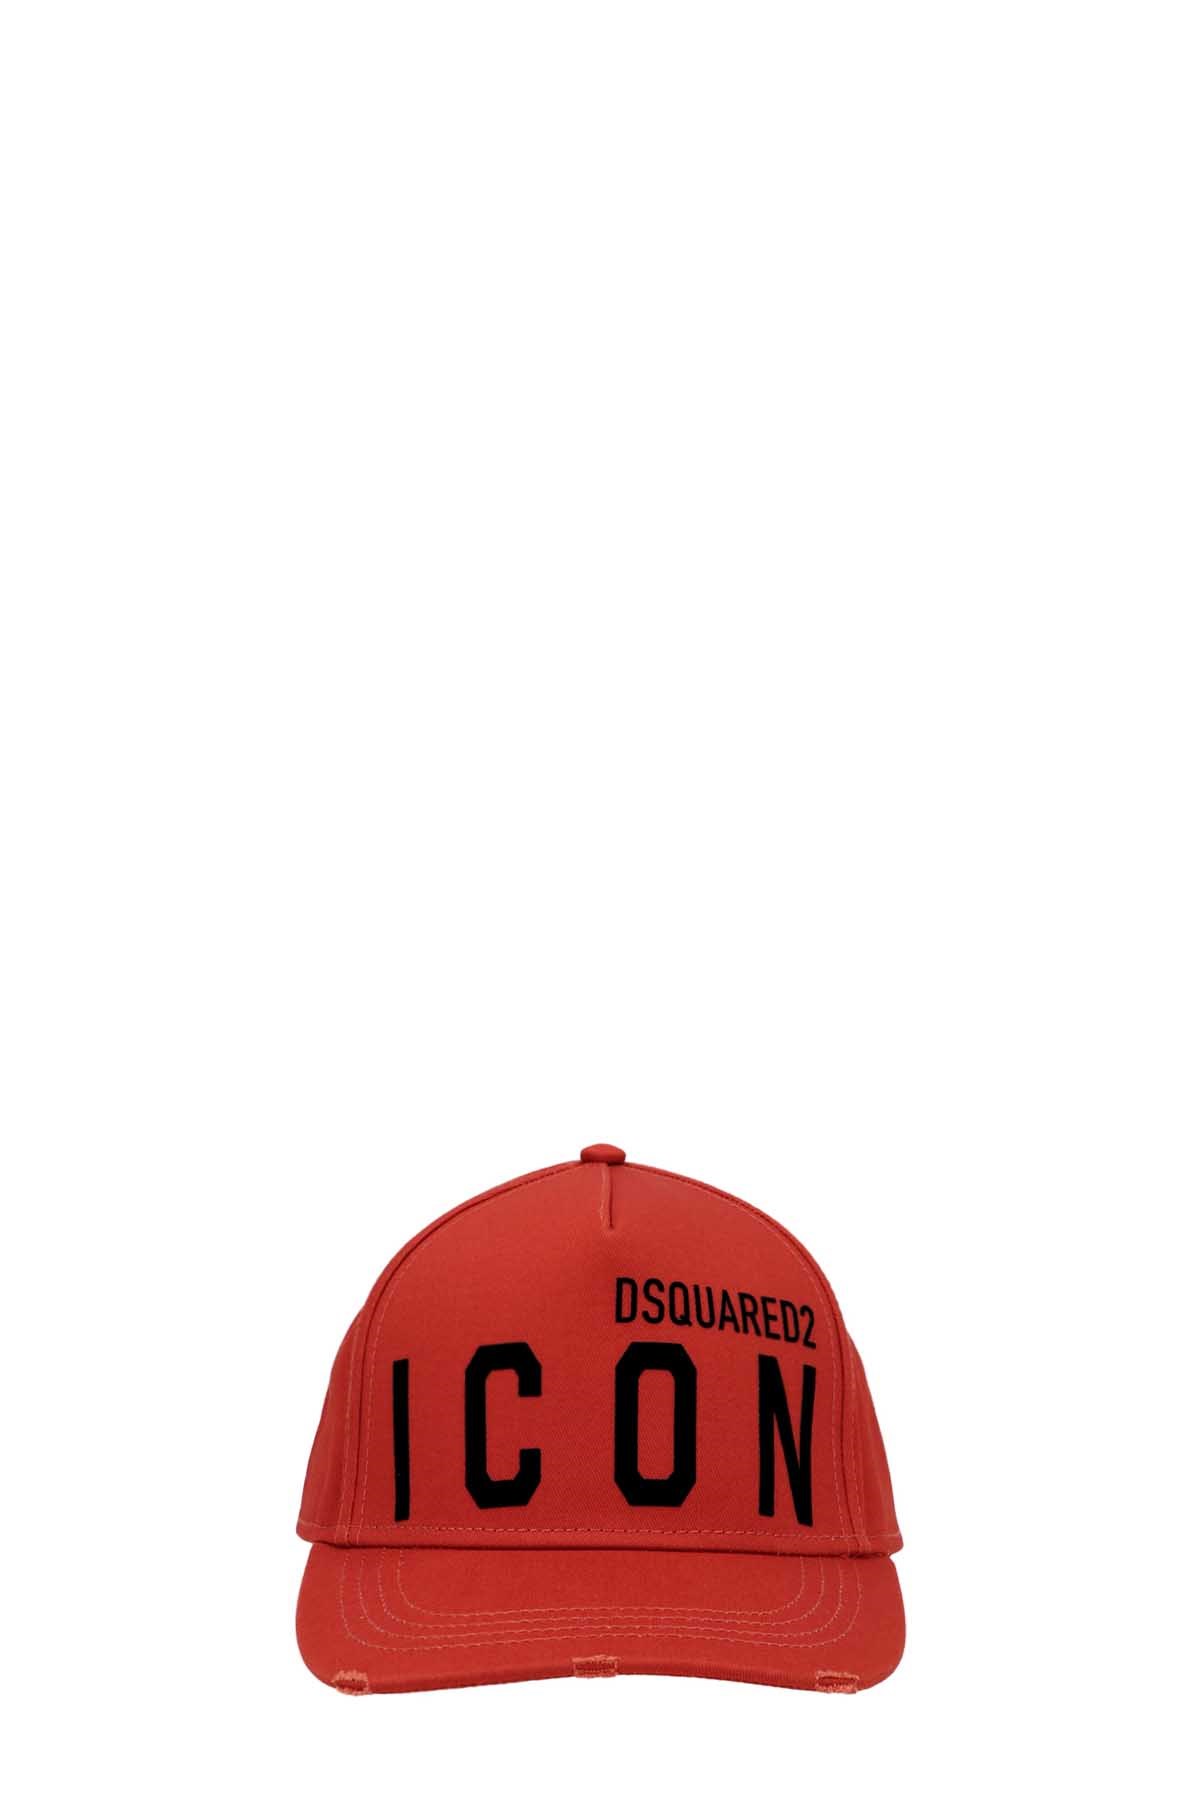 DSQUARED2 'Icon' Cap